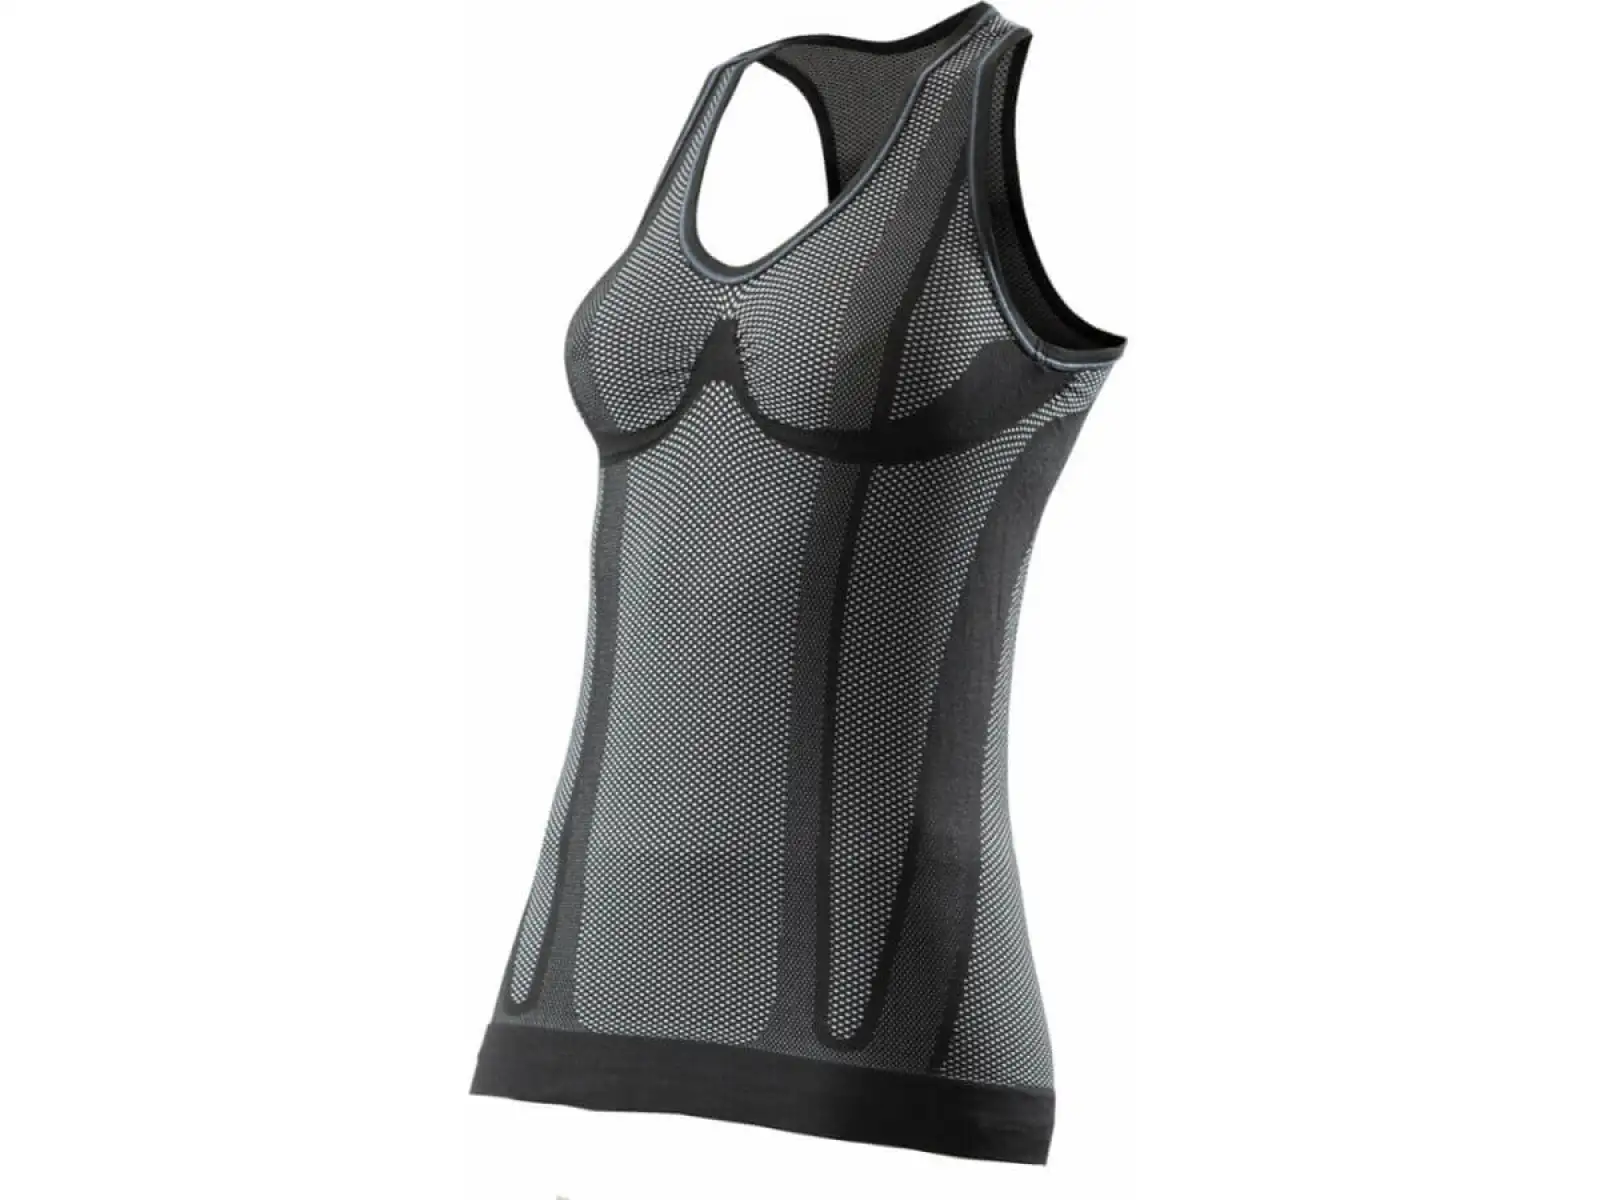 SIXS SMG dámské triko bez rukávů carbon černá